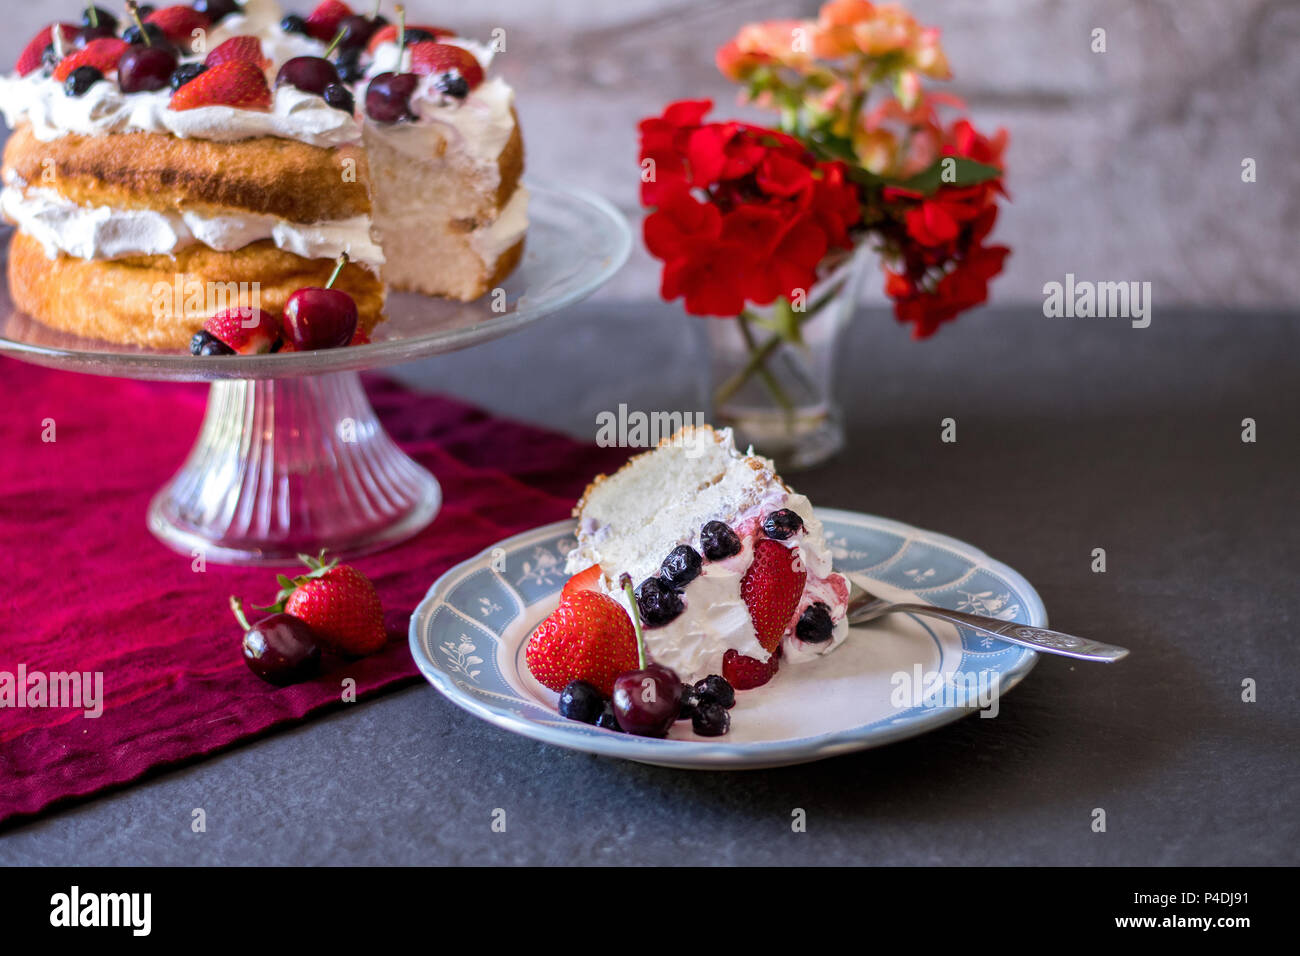 Une belle tranche de gâteau angelfood couvert de crème fouettée et de fruits frais, coloré avec des fleurs et des fruits Banque D'Images